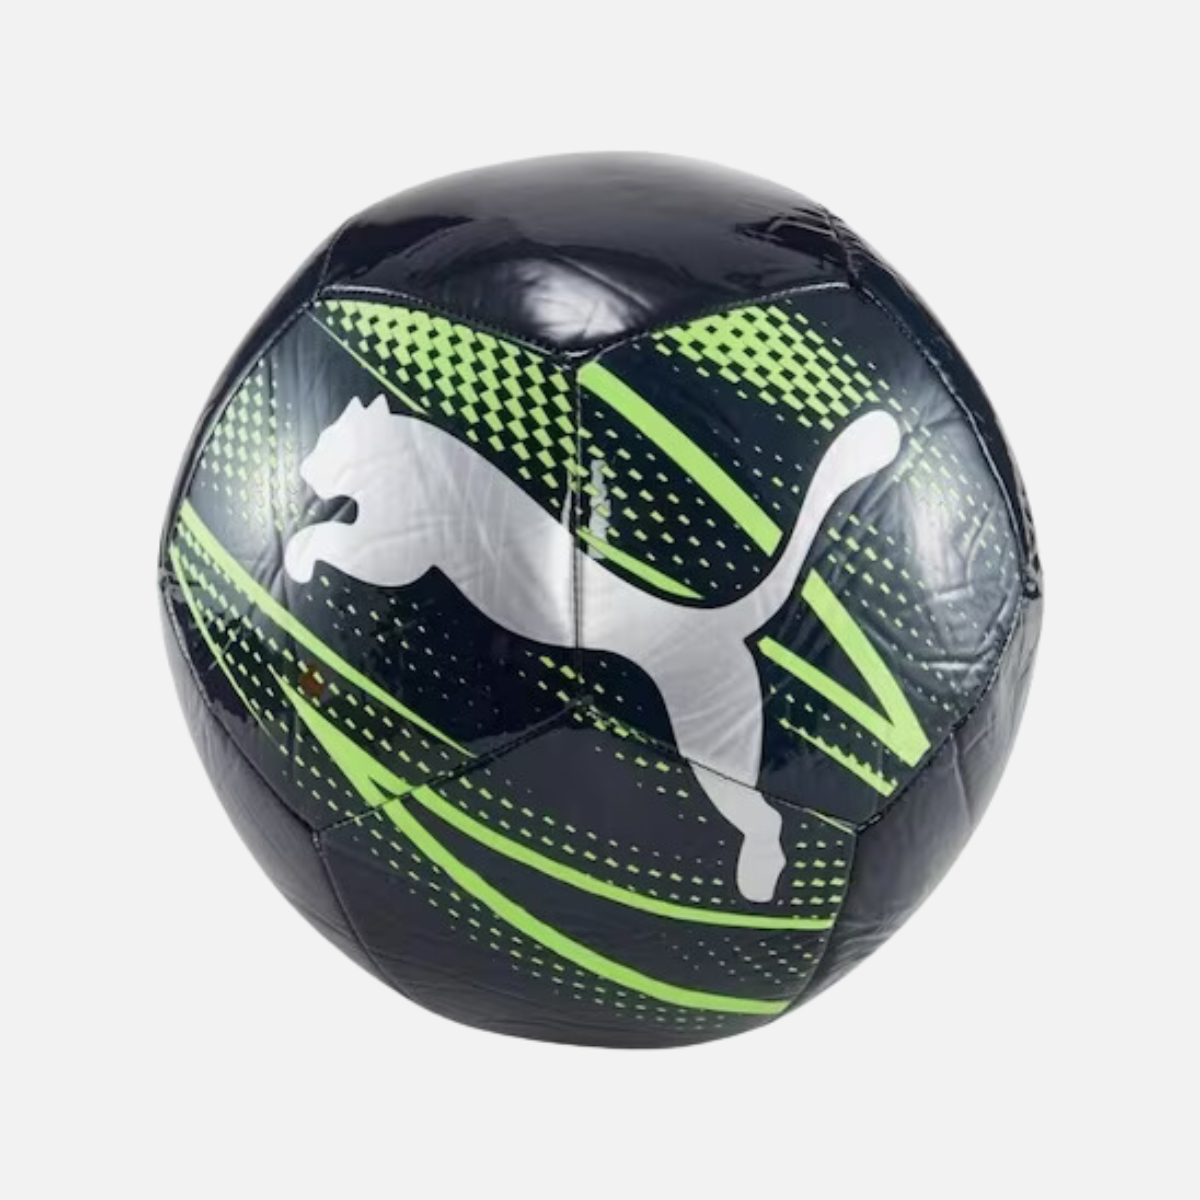 Puma Attacanto Graphic Soccer -Black/Green